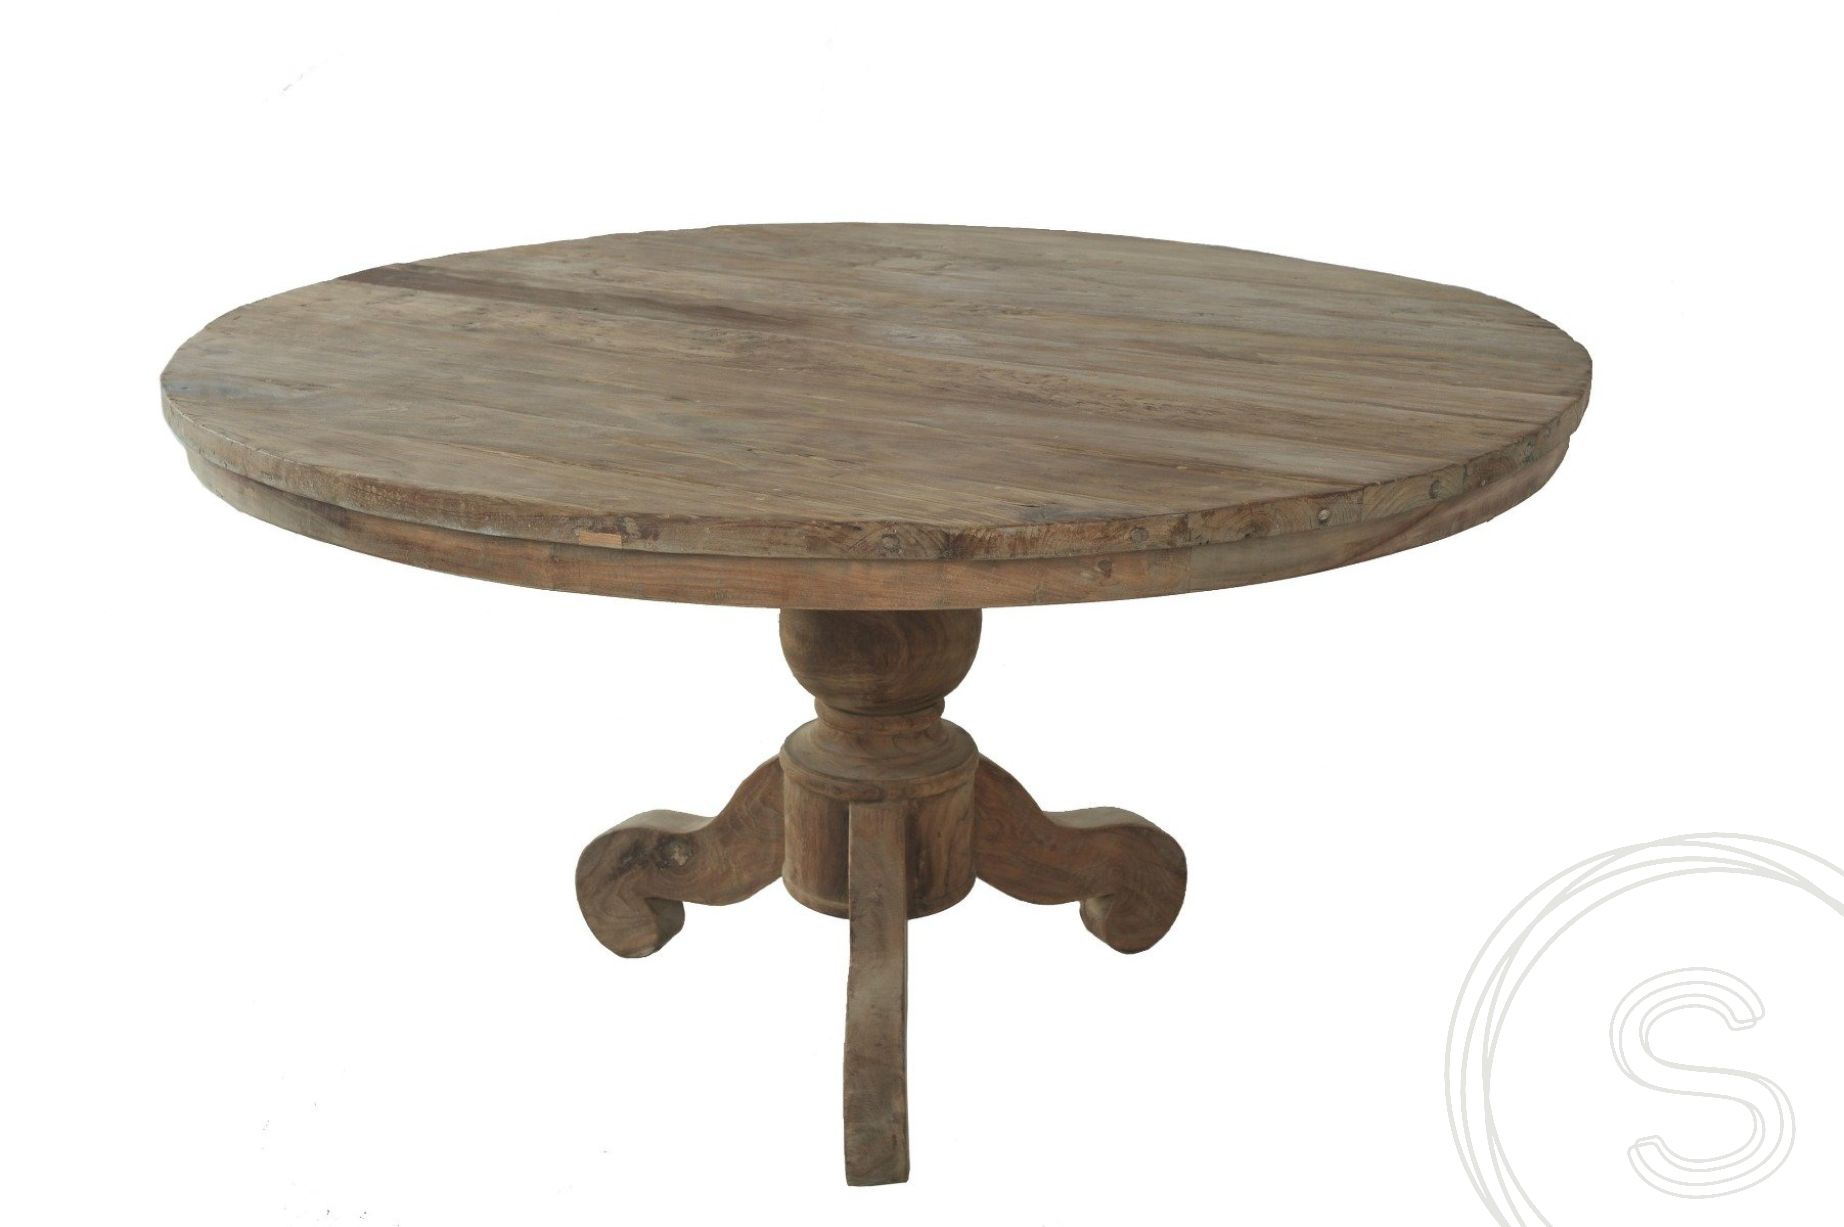 Onrustig eenzaam scherp Teak tafel rond 110cm oud hout